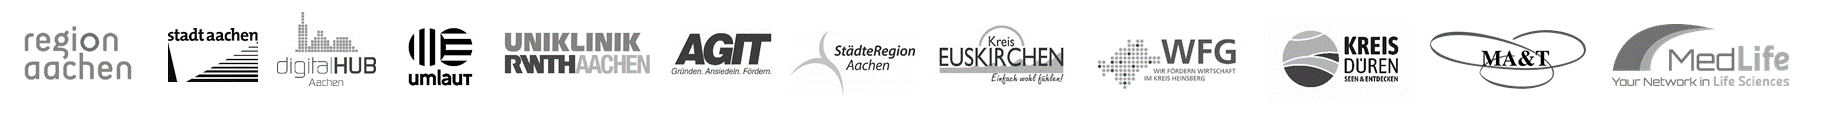 Logoleiste_Projektpartner_sw_03_21